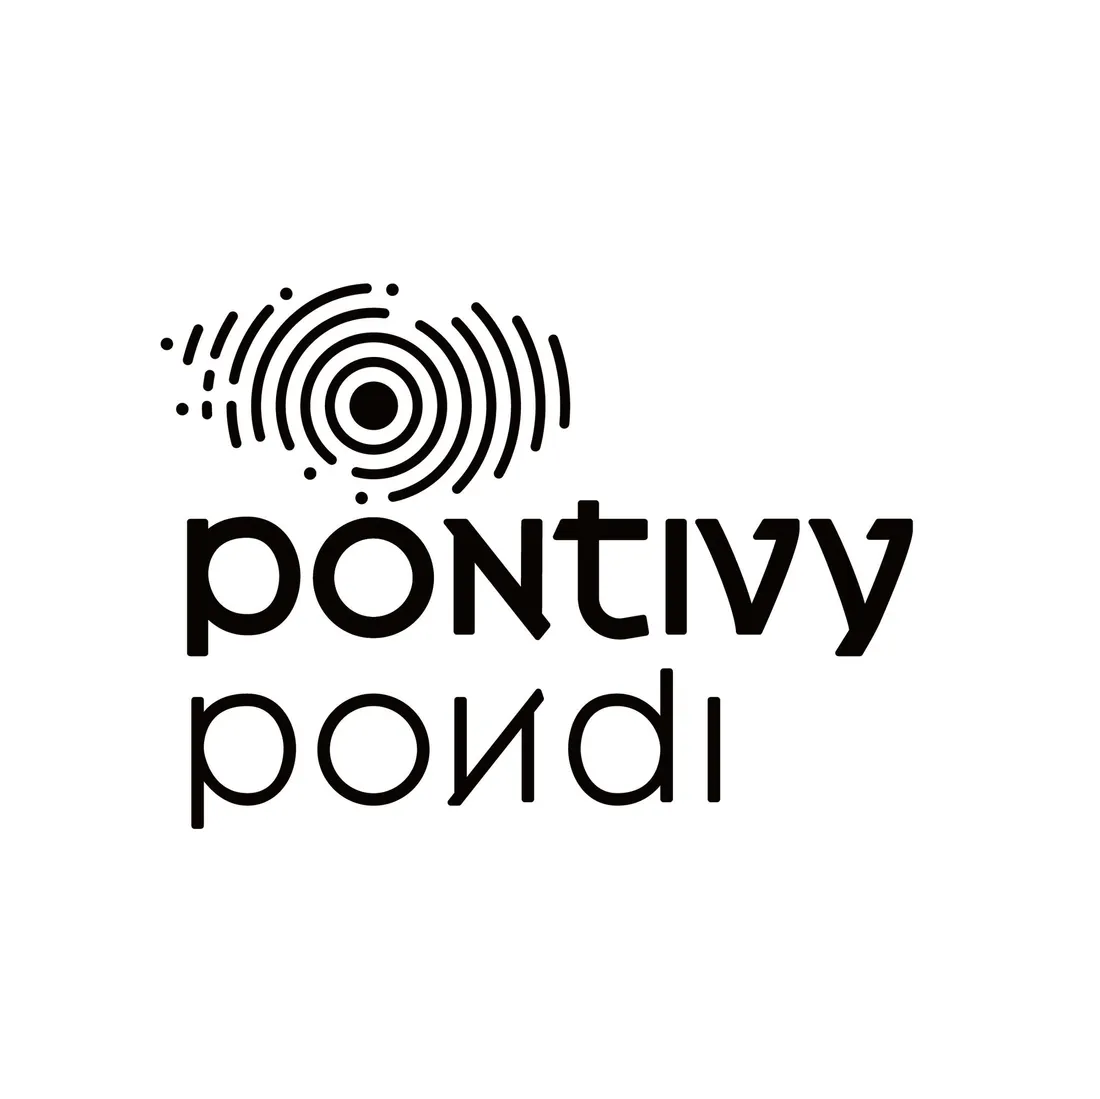 Le nouveau logo de la ville de Pontivy